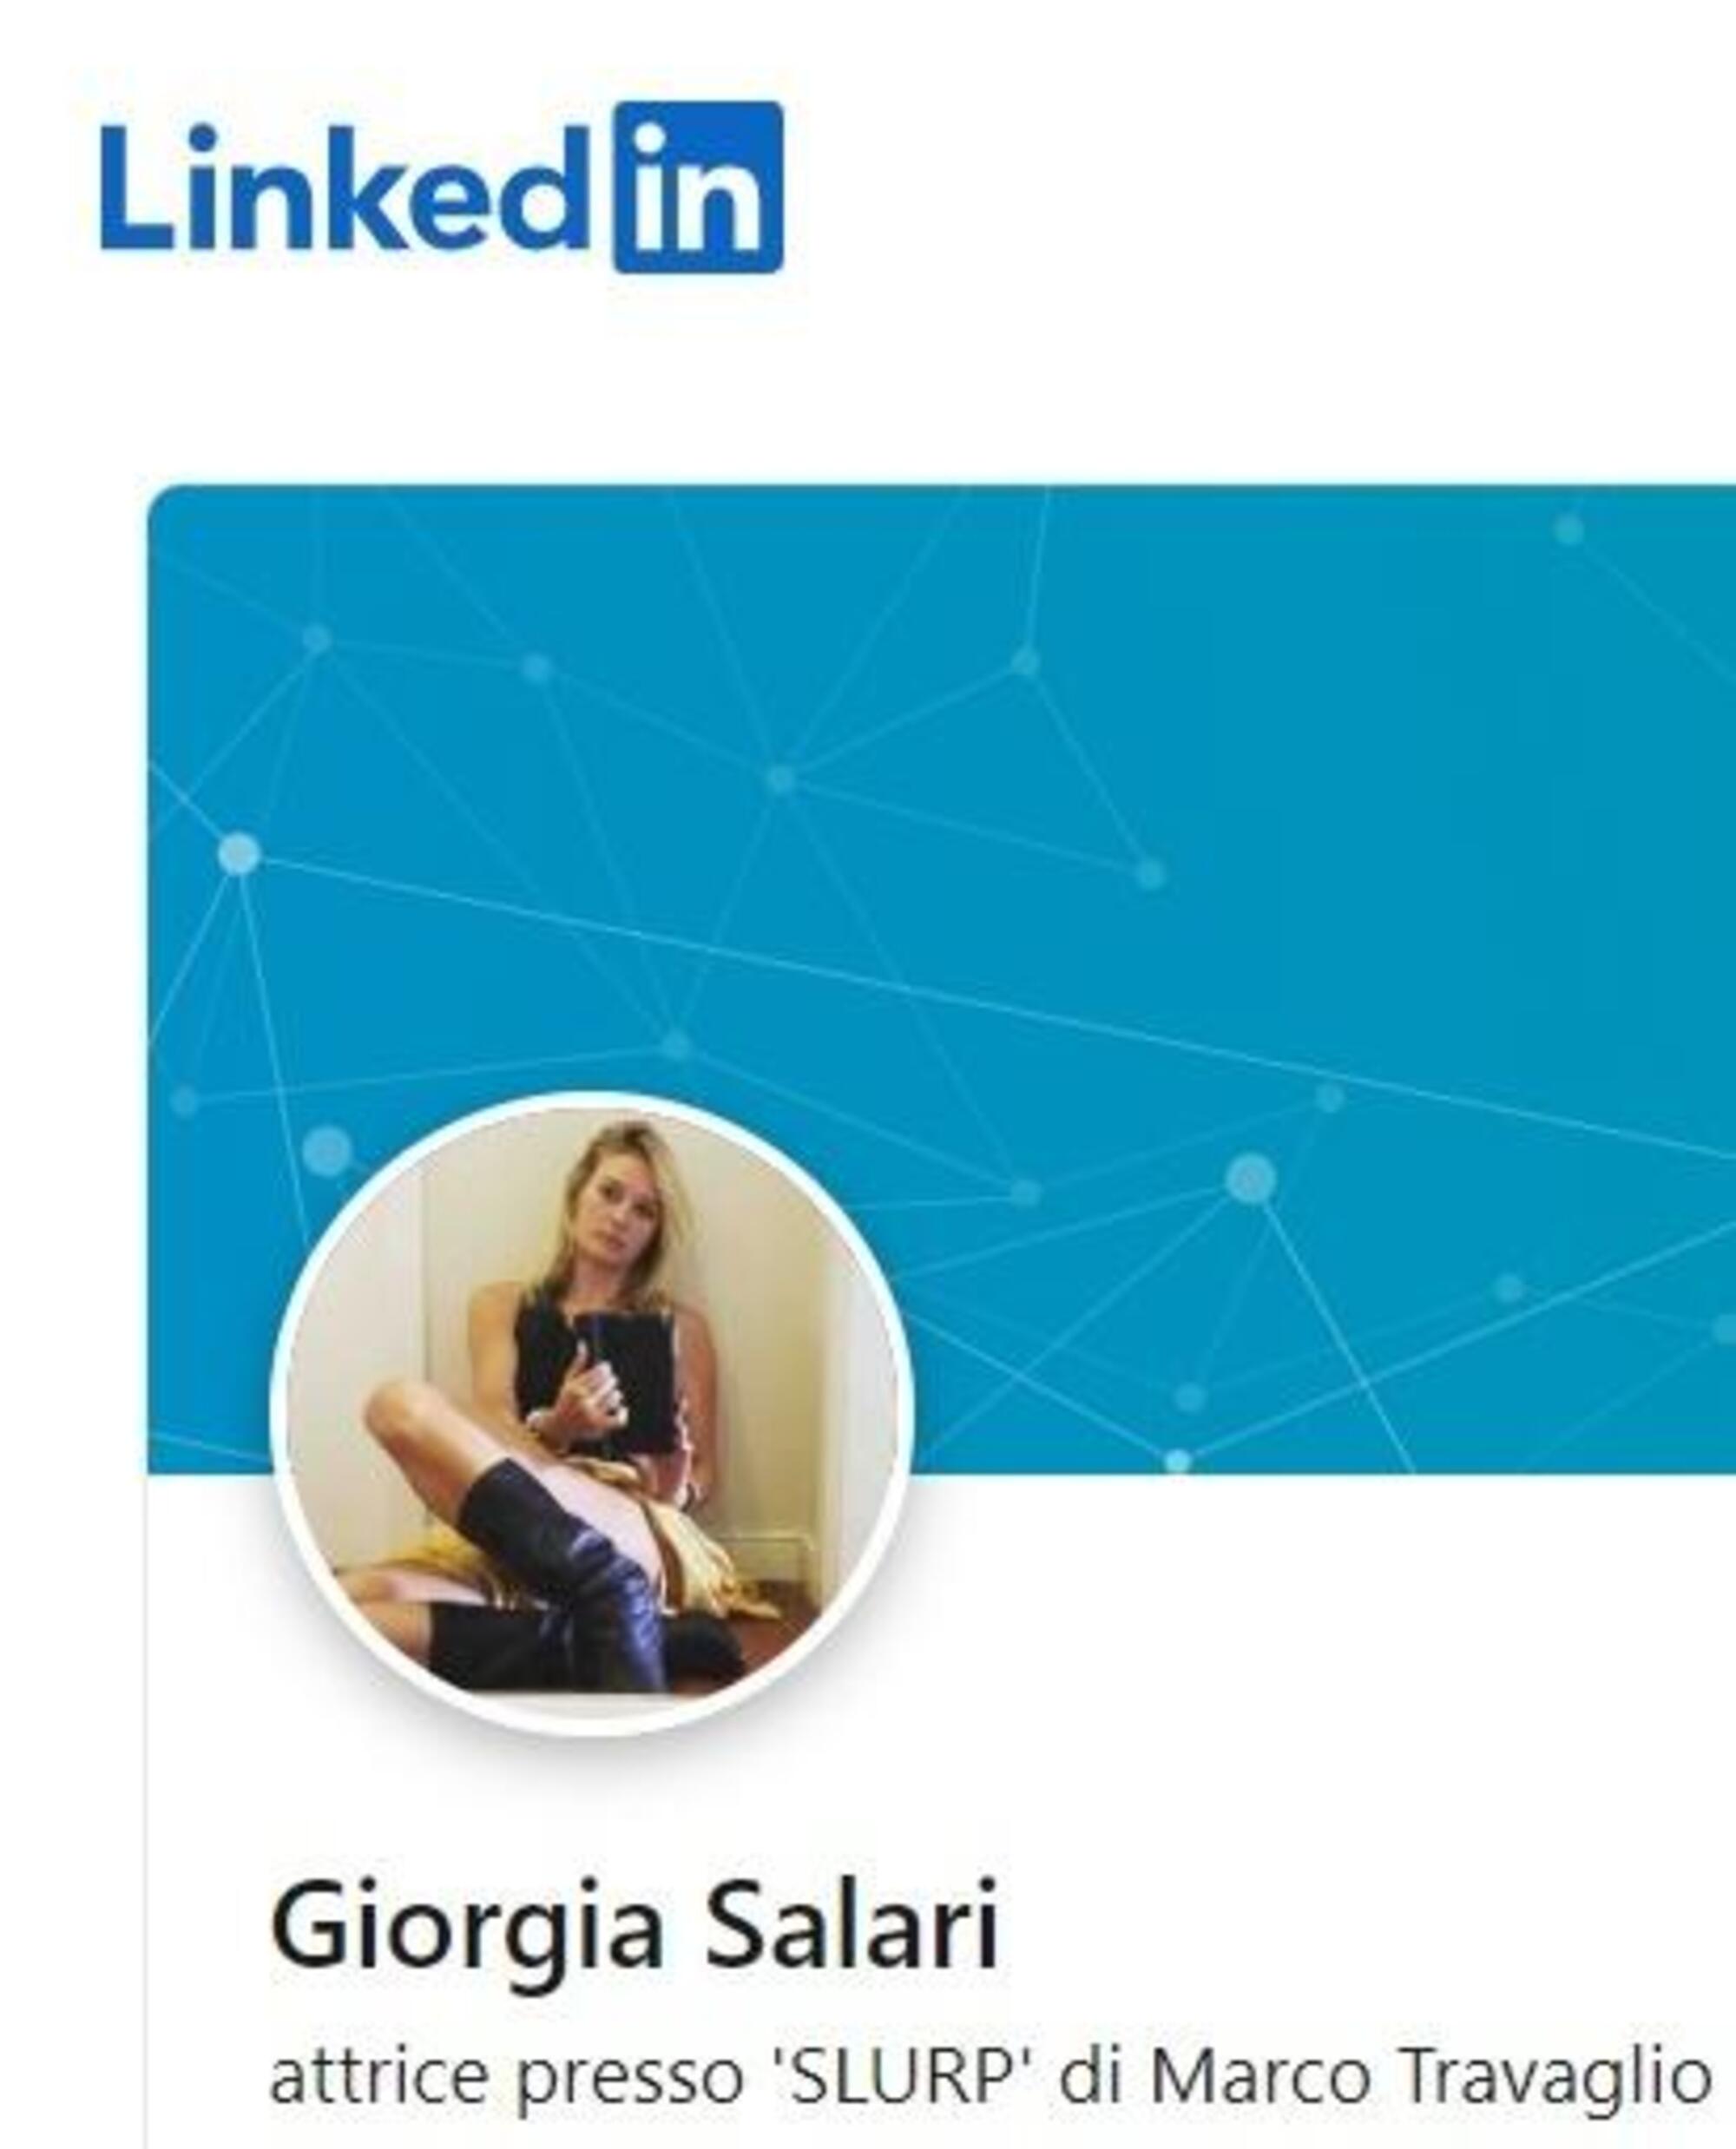 Giorgia Salari su LinkedIn